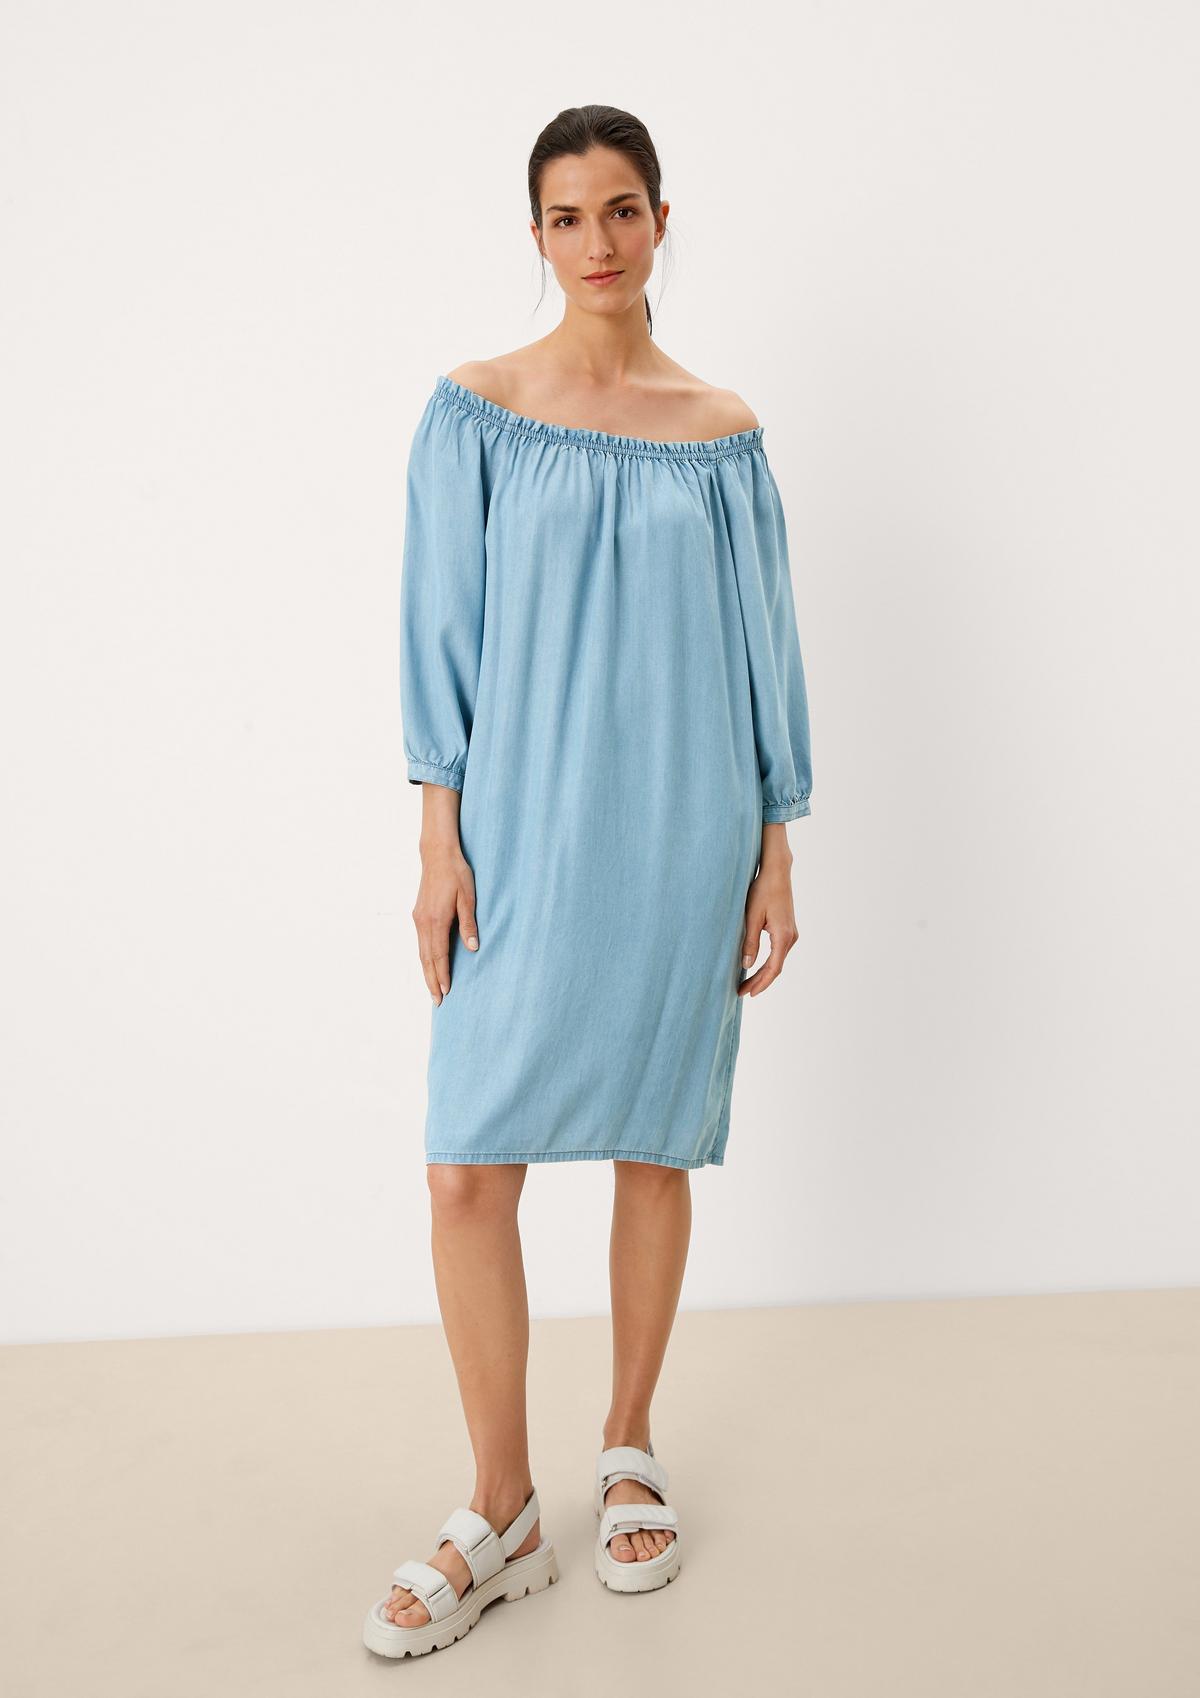 [Vertrauen zuerst, Qualität zuerst] Midi-Kleid mit Rüschendetail blassblau 